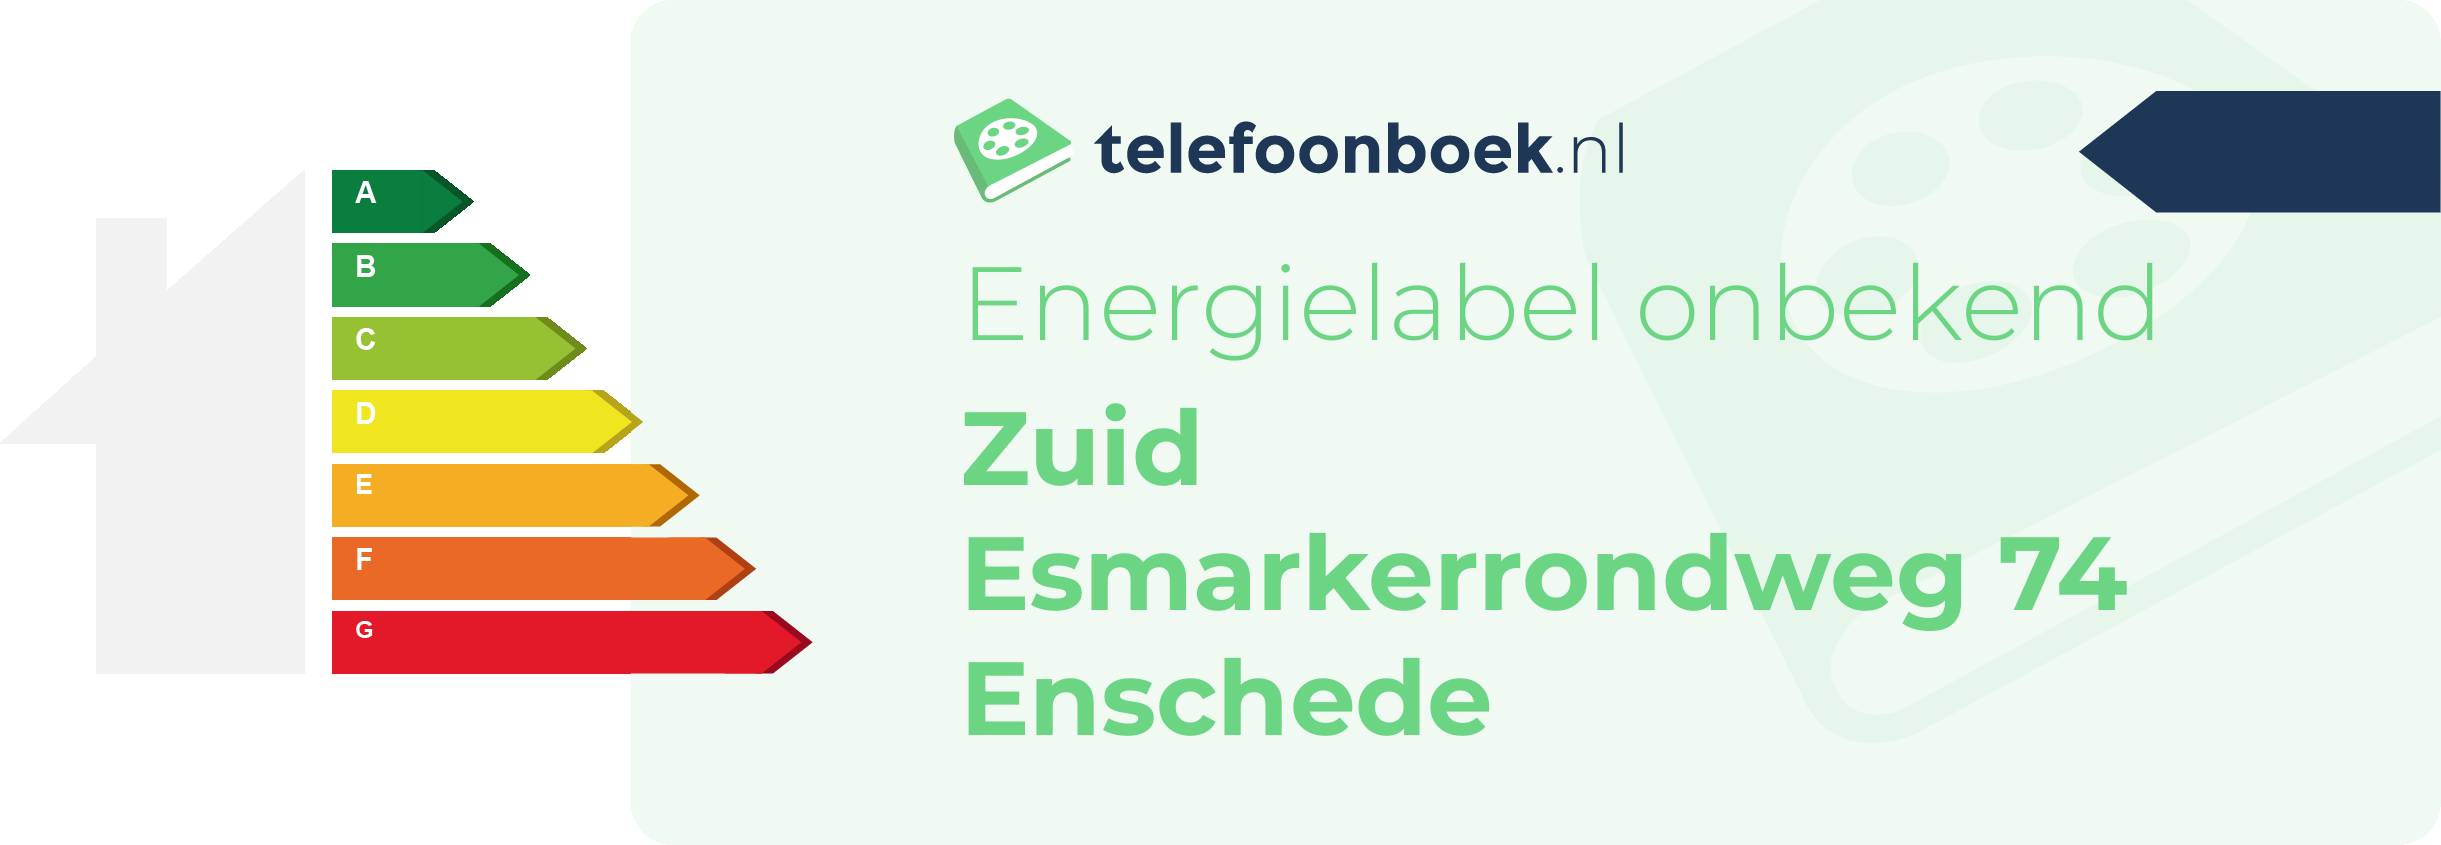 Energielabel Zuid Esmarkerrondweg 74 Enschede